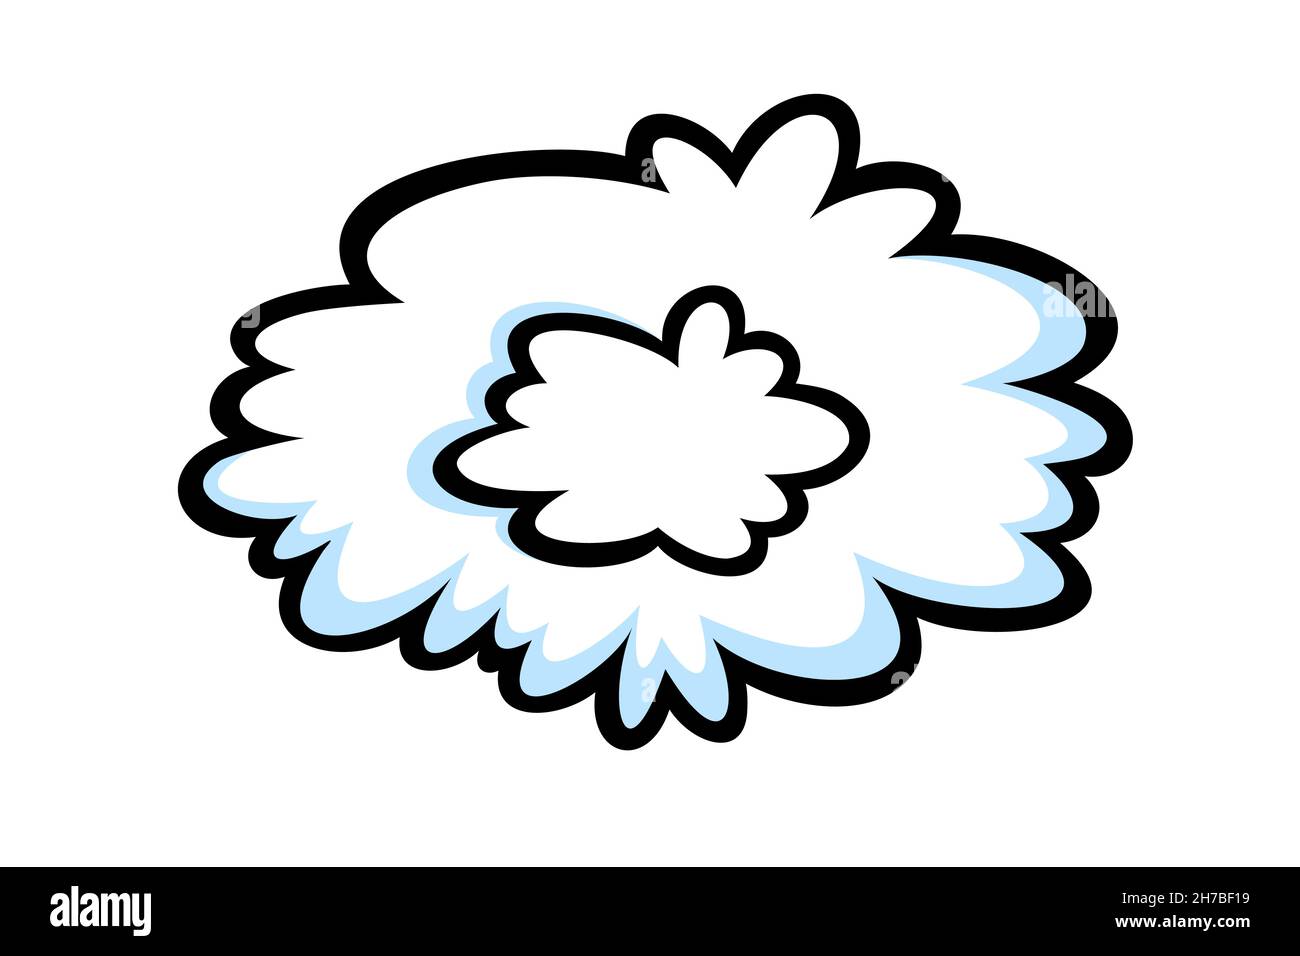 Dampfring im Comic-Stil. Runde Wolke aus Dampf oder Rauch für Zigarre, Zigarette oder schnelle Bewegung. Vektorgrafik isoliert auf weißem Hintergrund Stock Vektor